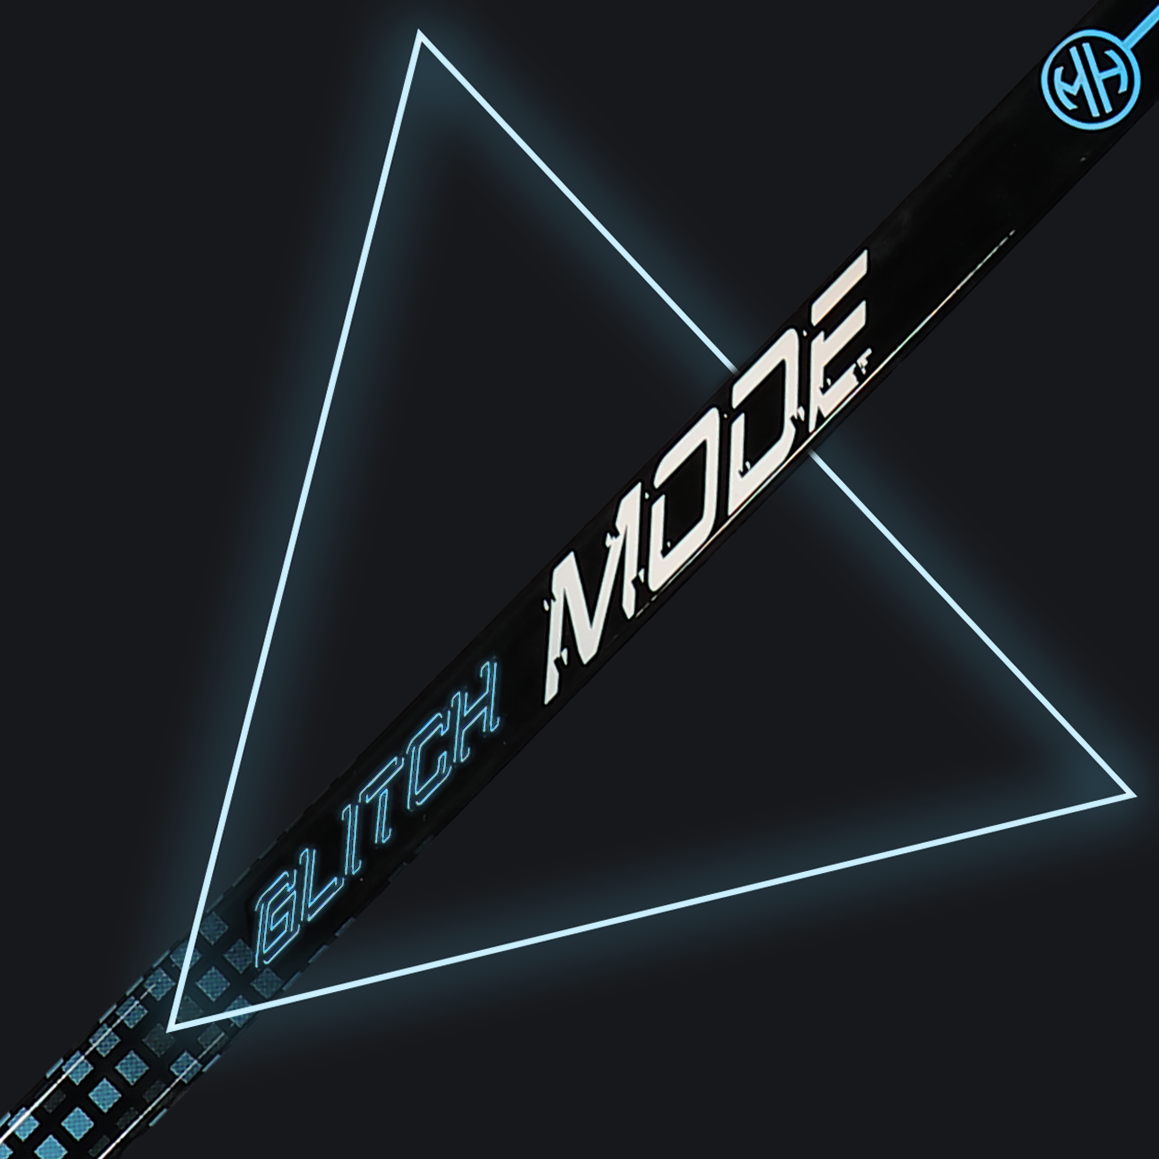 BattleMode Mini Stick – ModeHockey